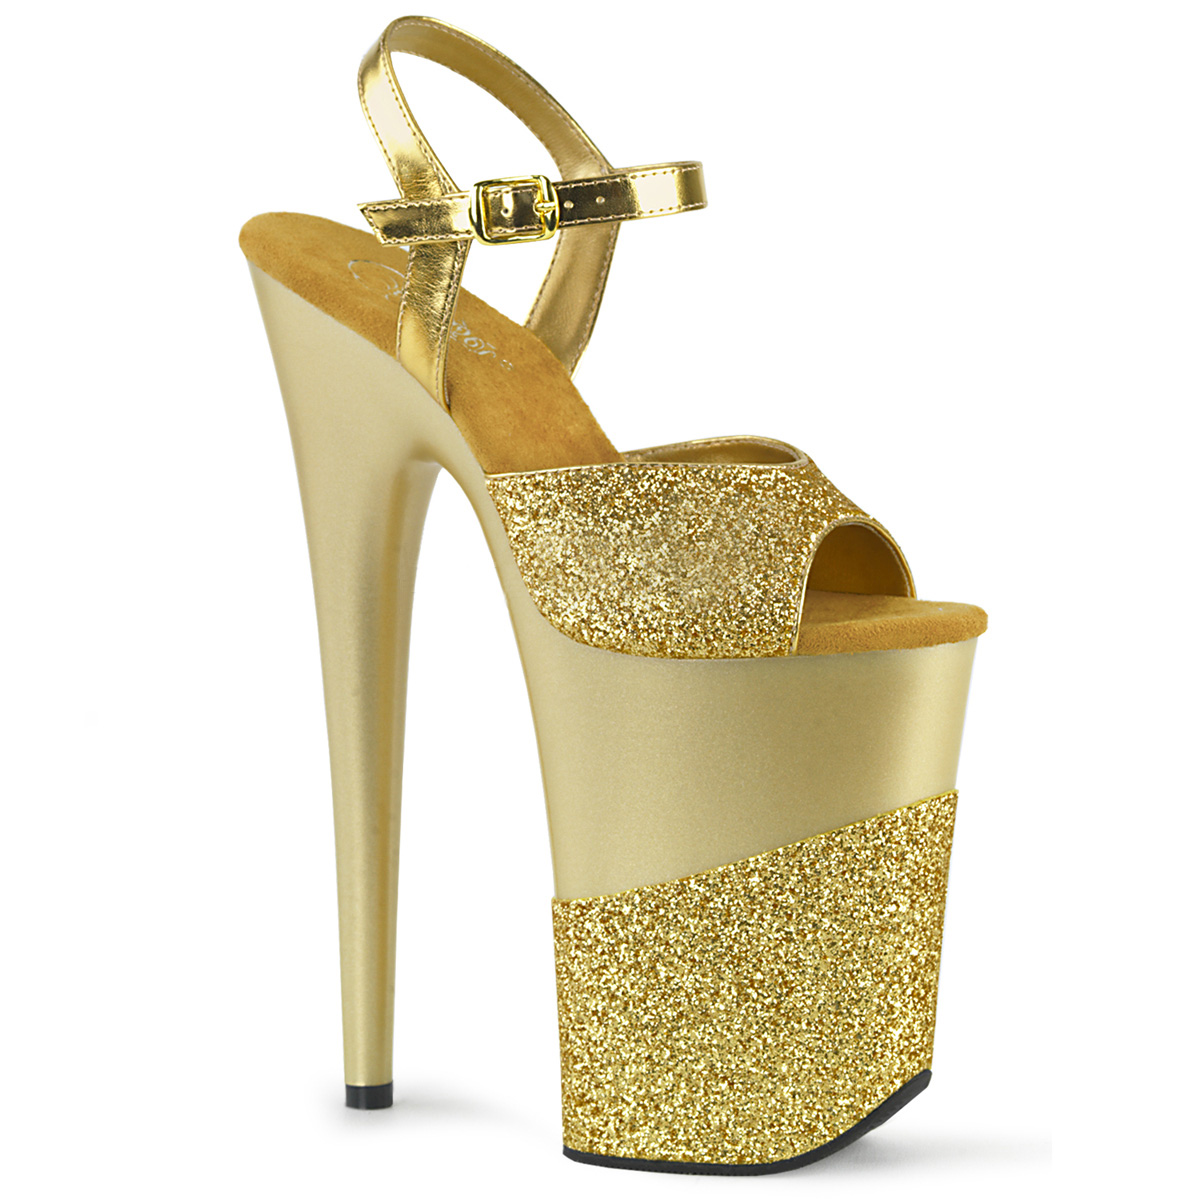 Buy > yellow pleaser heels > in stock